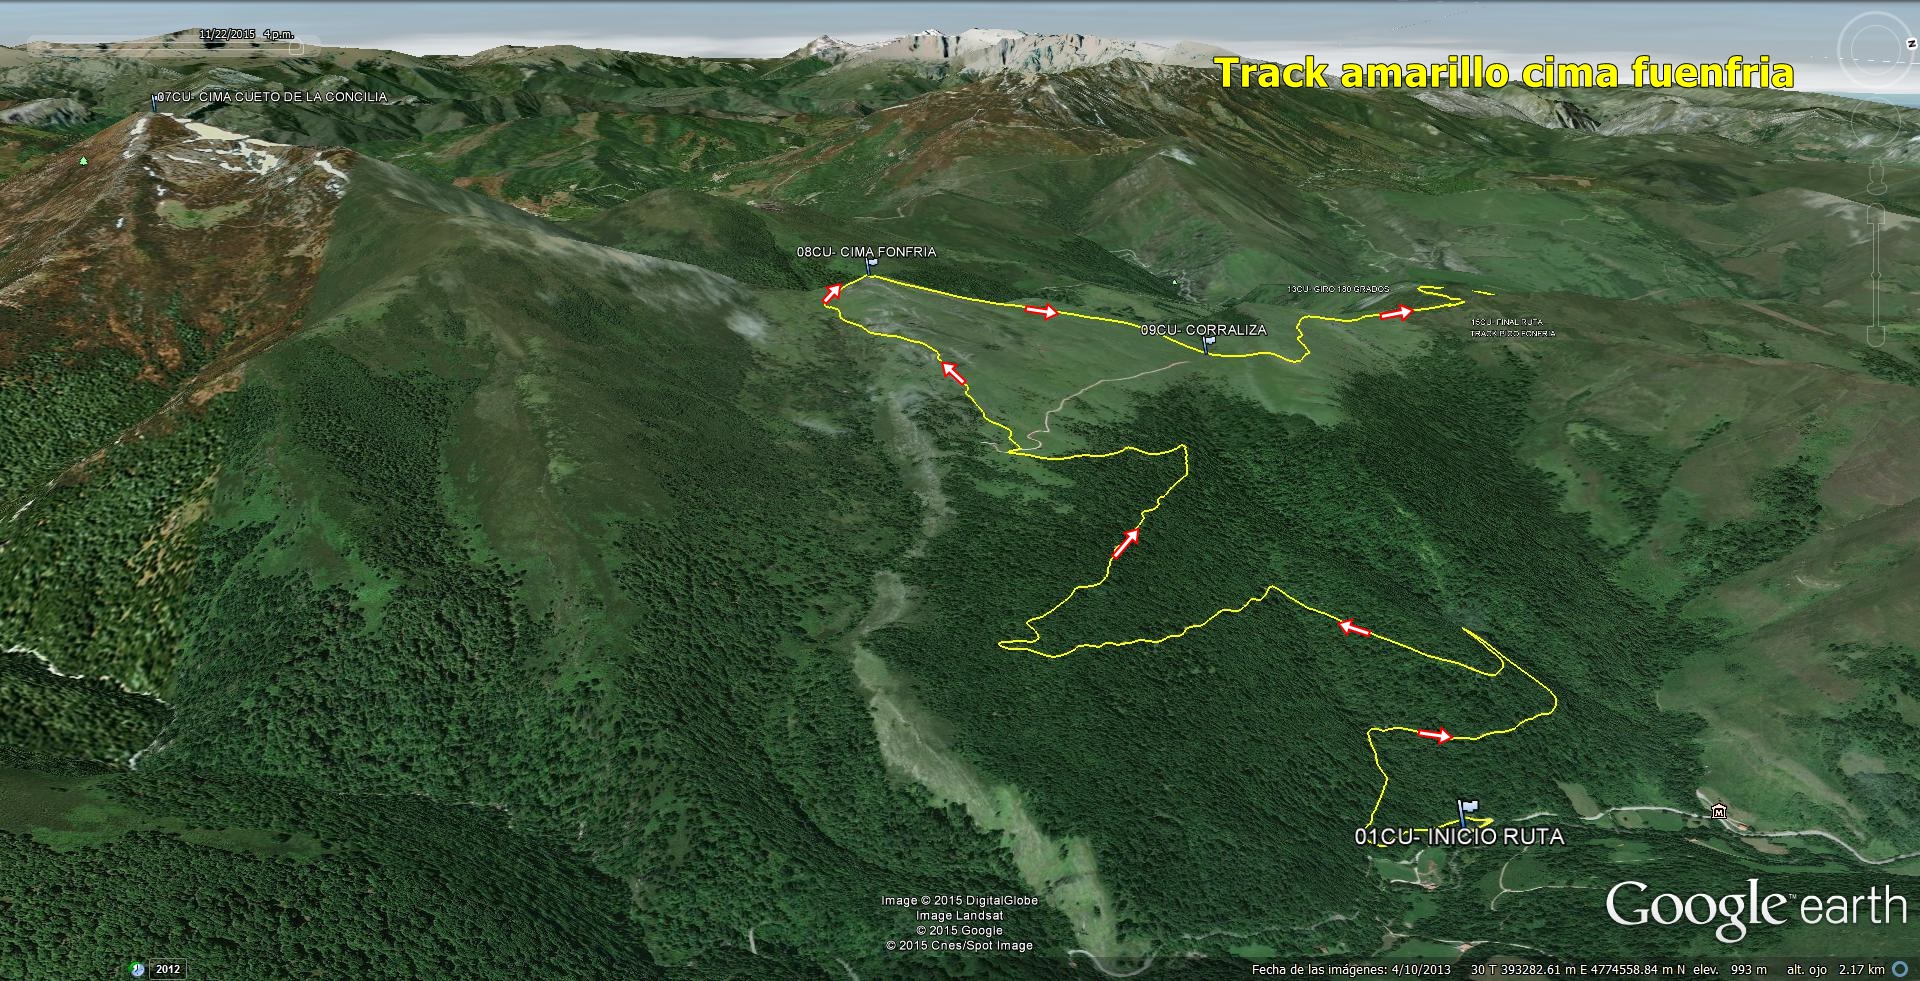 02- Vista general de la ruta con la cima de Fuenfria y track en amarillo